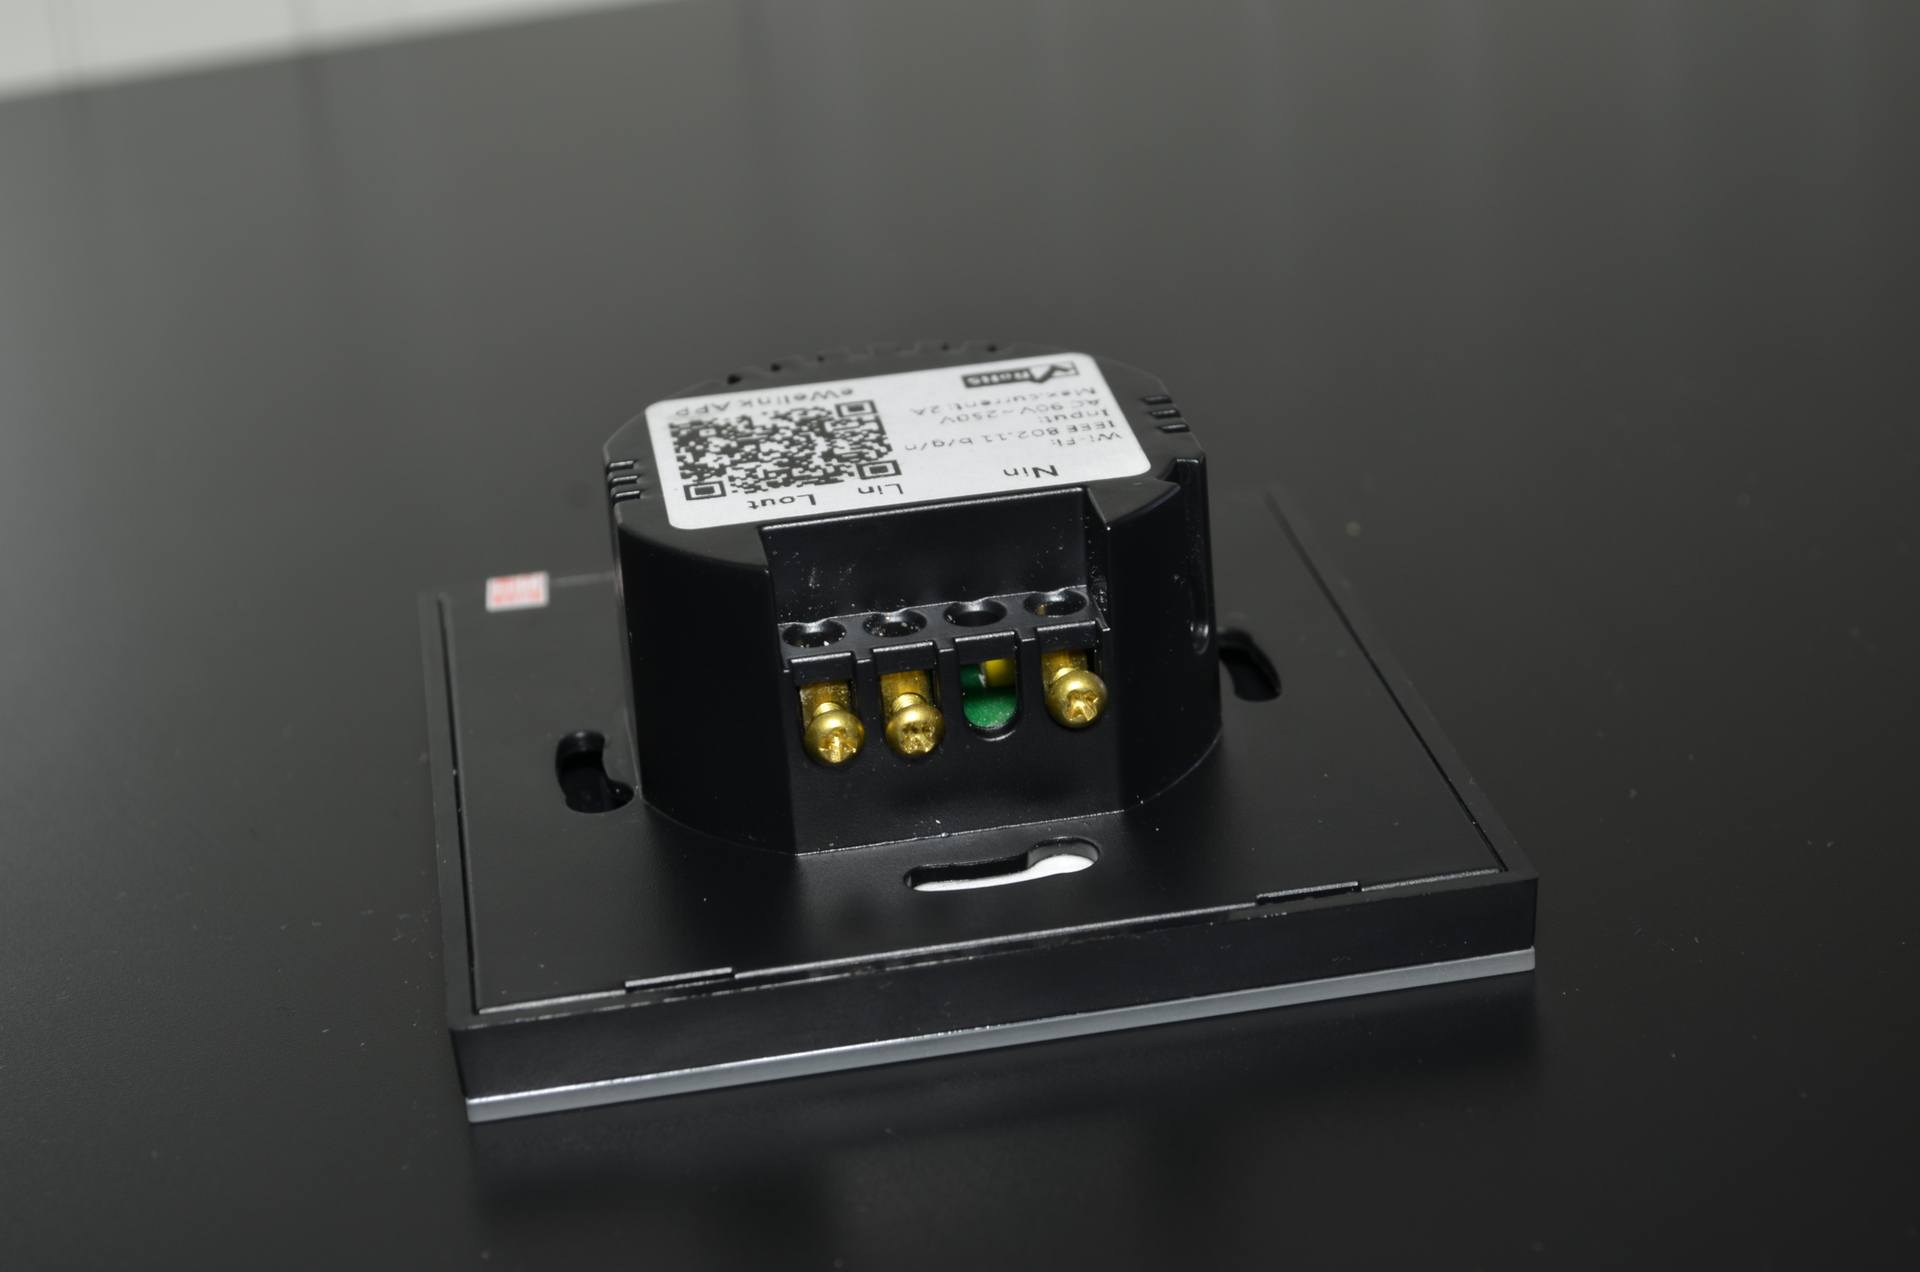 Sonoff DSC 1575 TEST – Itead Sonoff Touch : Un interrupteur WiFi pour contrôler sa maison ampoule